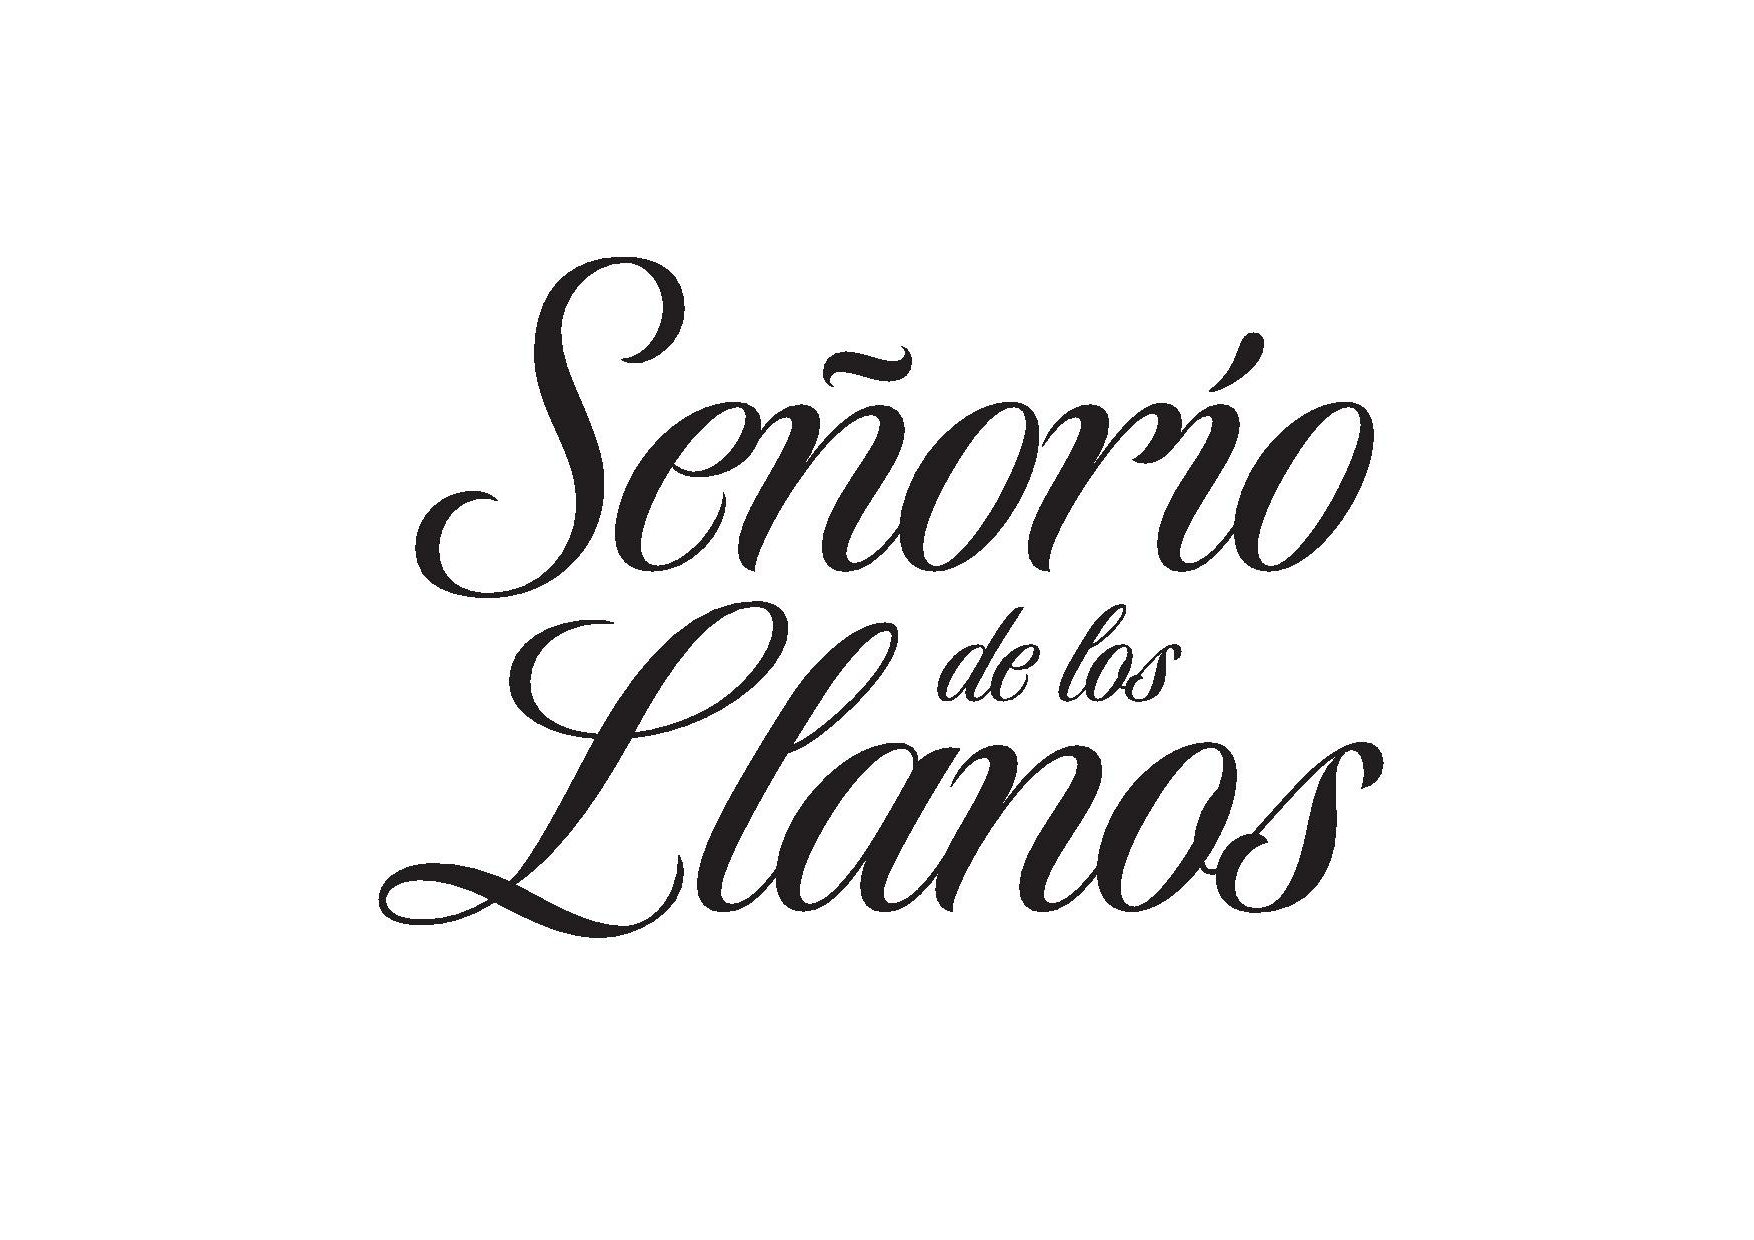 Senorio_Llanos_2020_3lineas